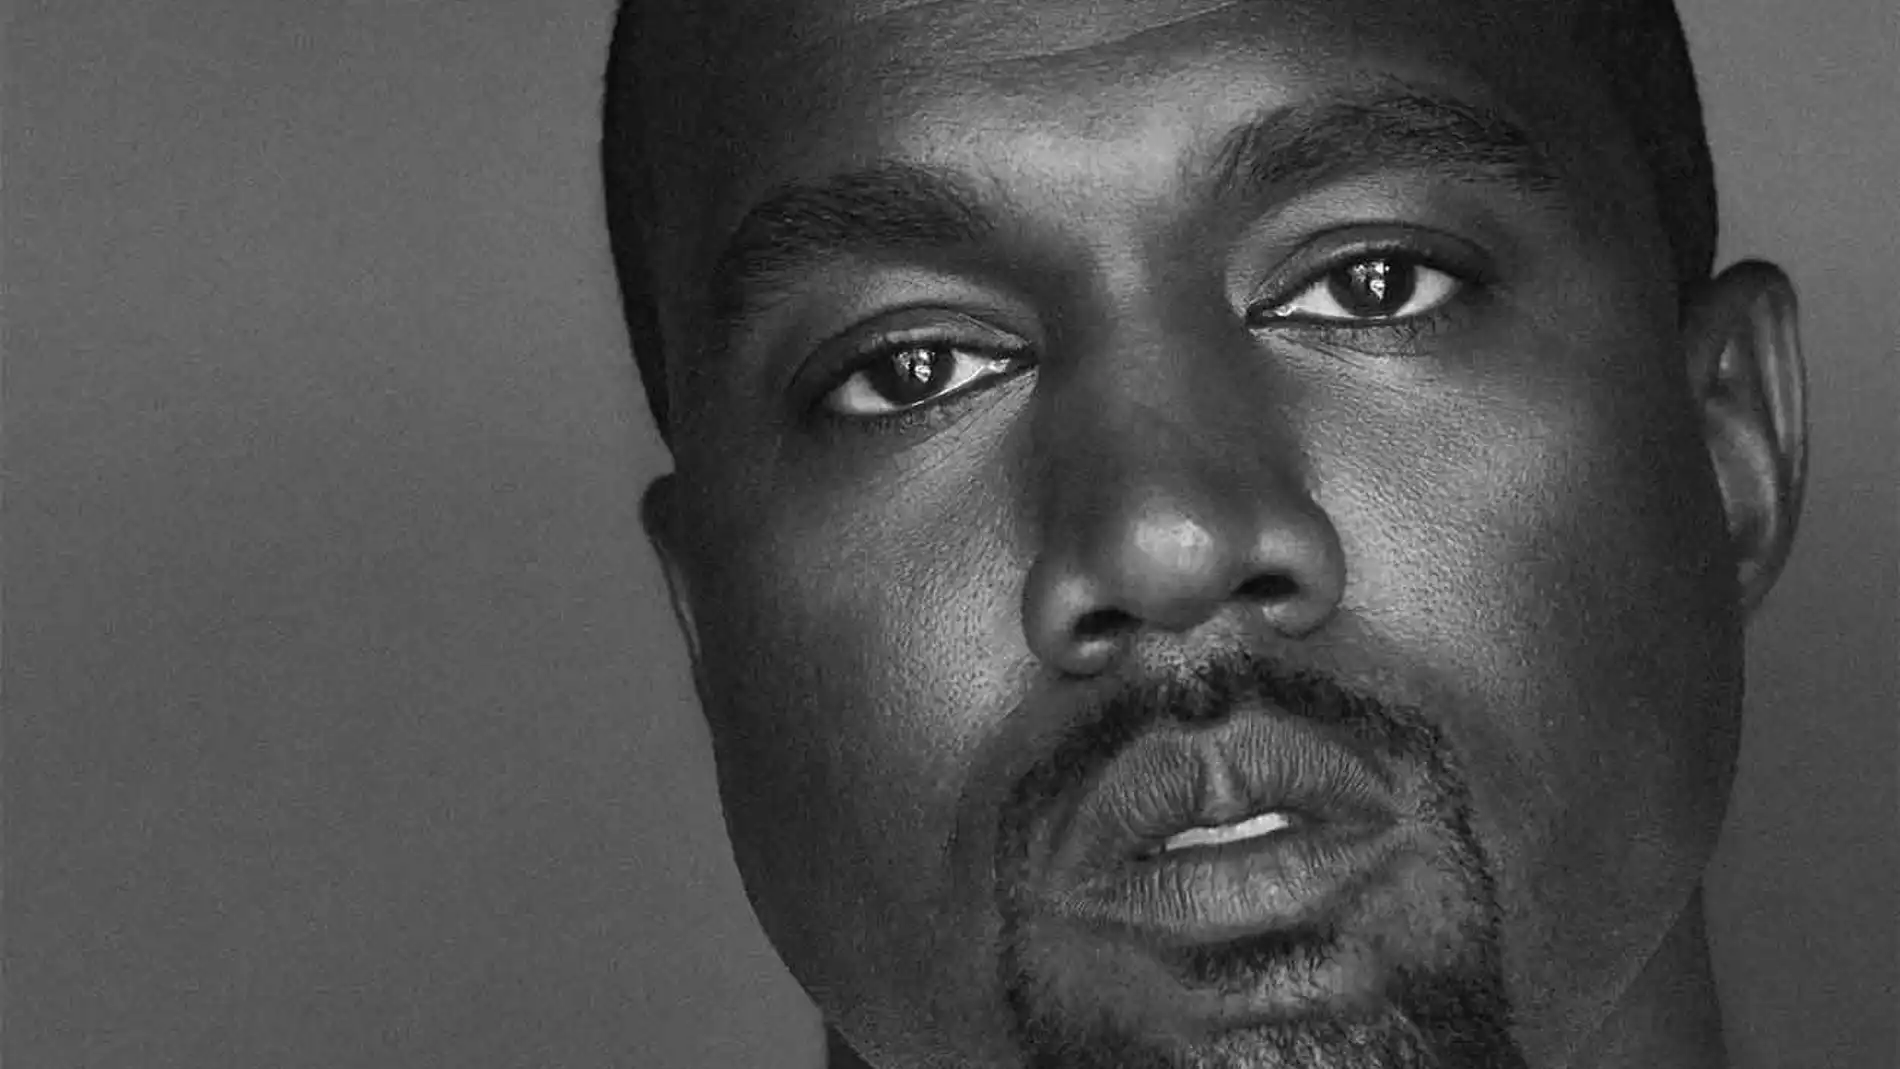 El rapero Kanye West, quien ahora se hace llamar Ye